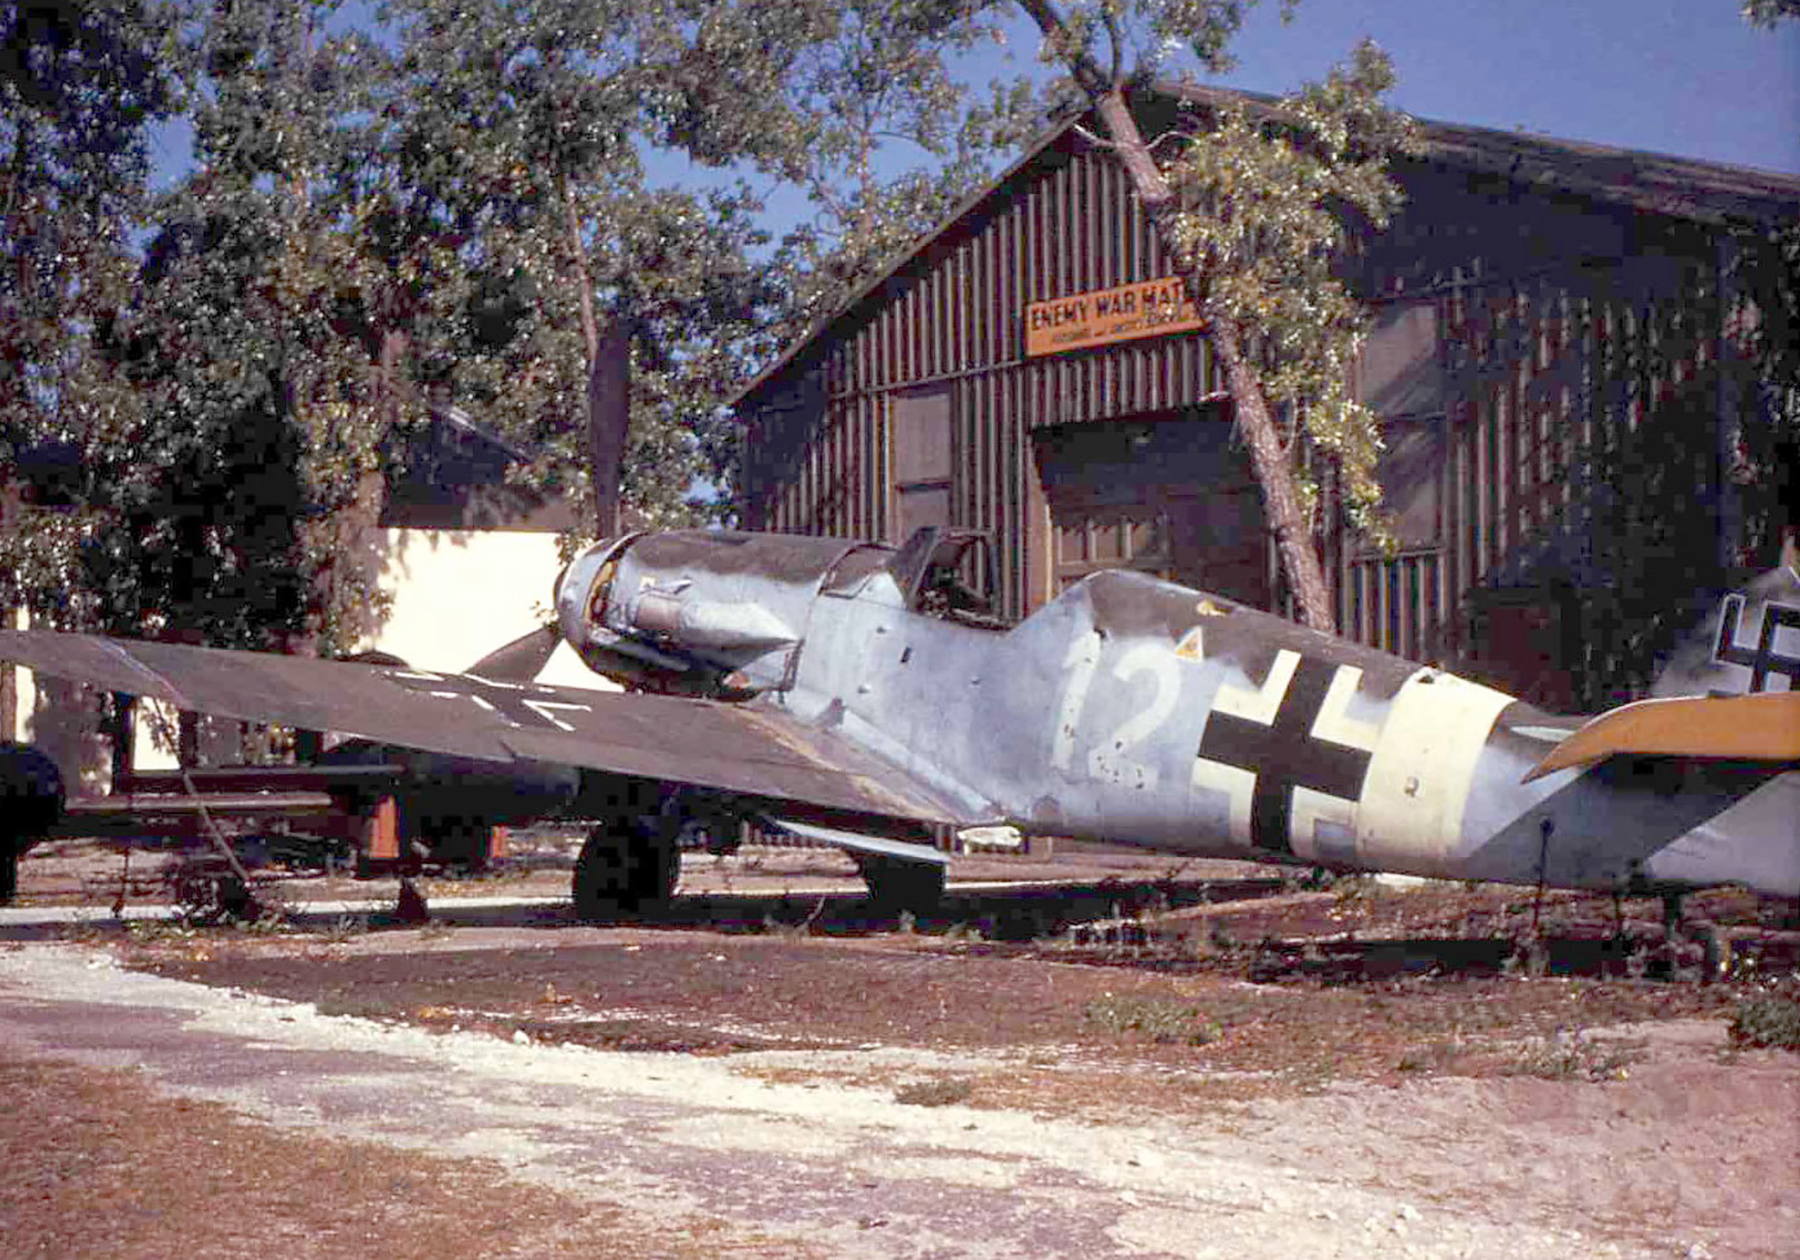 Messerschmitt Bf 109F4Trop 1.JG3 White 12 in MTO camouflage scheme captured 01